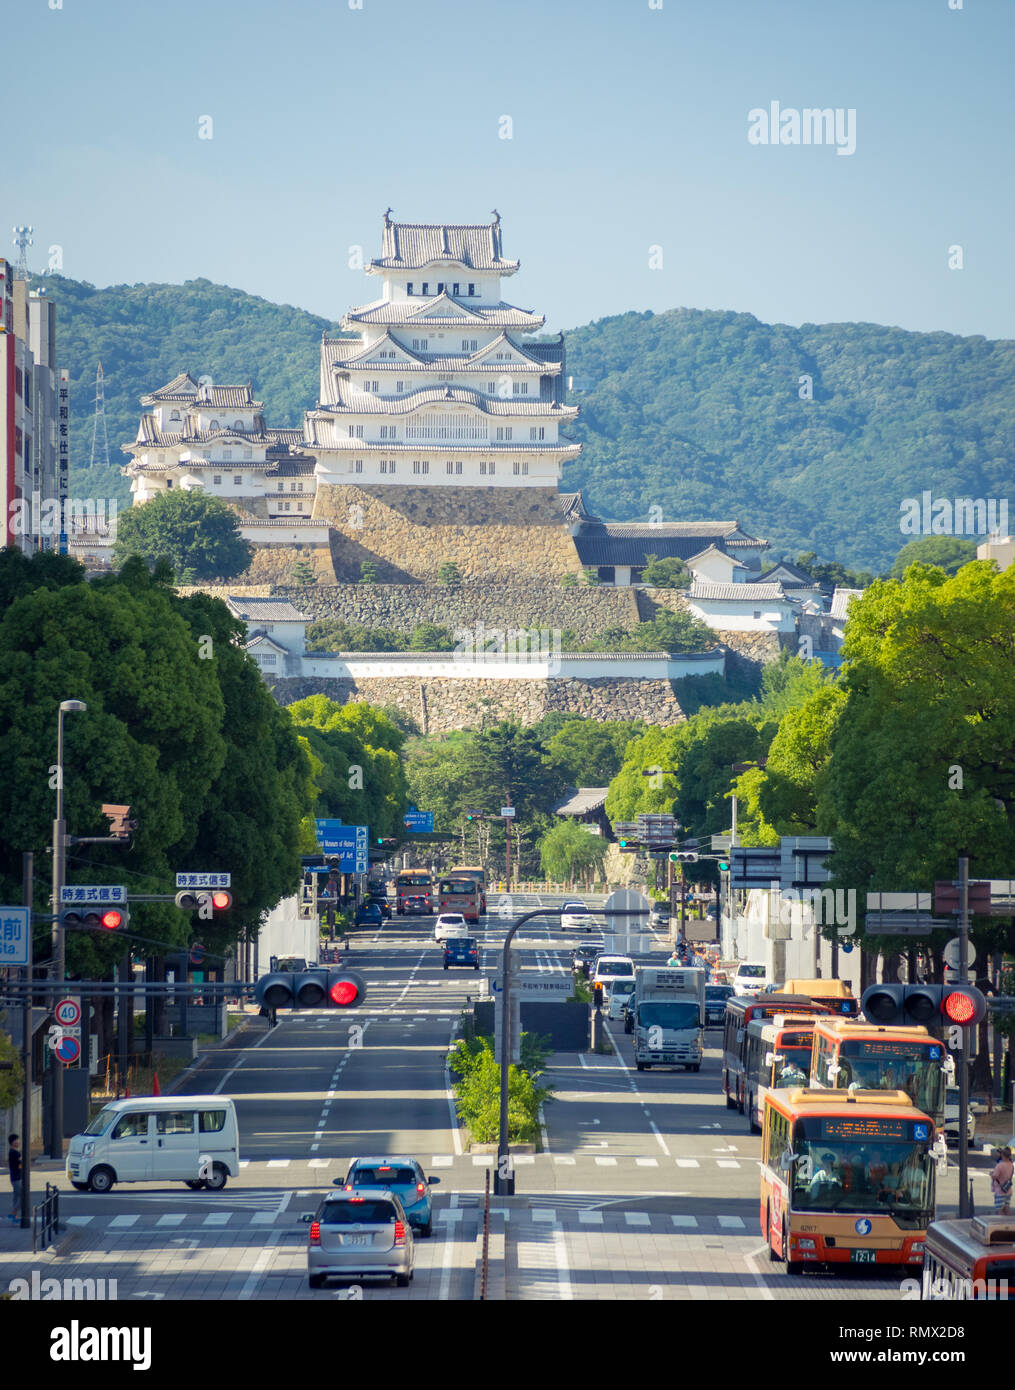 Vue d'Ootemae Ootemae-dori (rue), la rue principale, et du château de Himeji (Himeji-jo) se lève à l'arrière-plan, à Himeji, préfecture de Hyogo, Japon. Banque D'Images